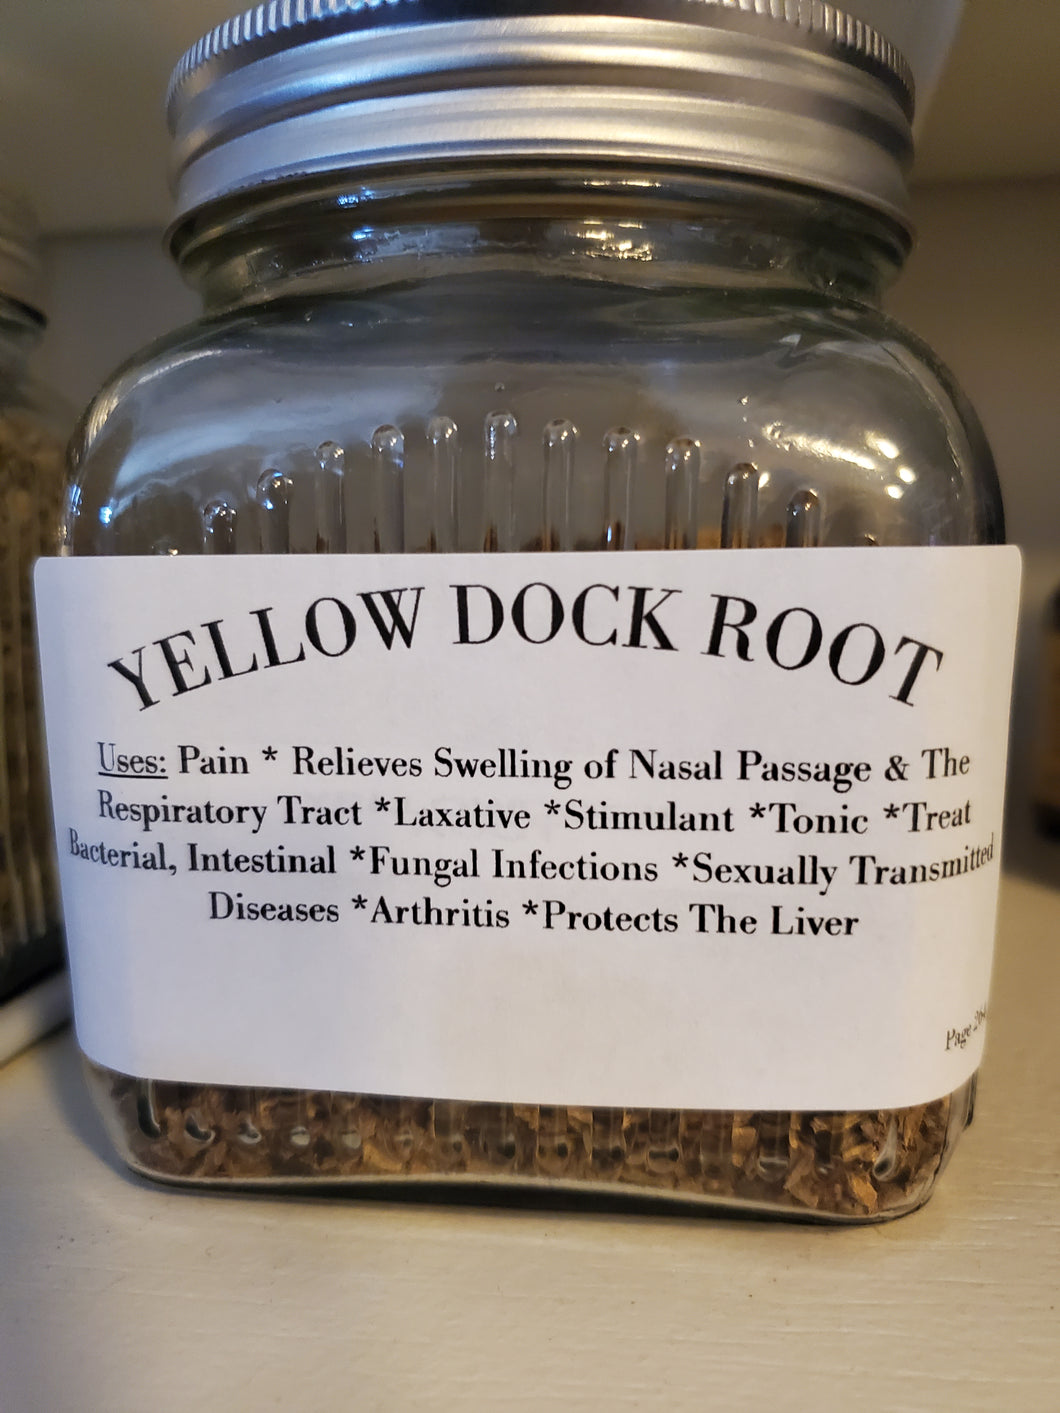 Yellowdock Root